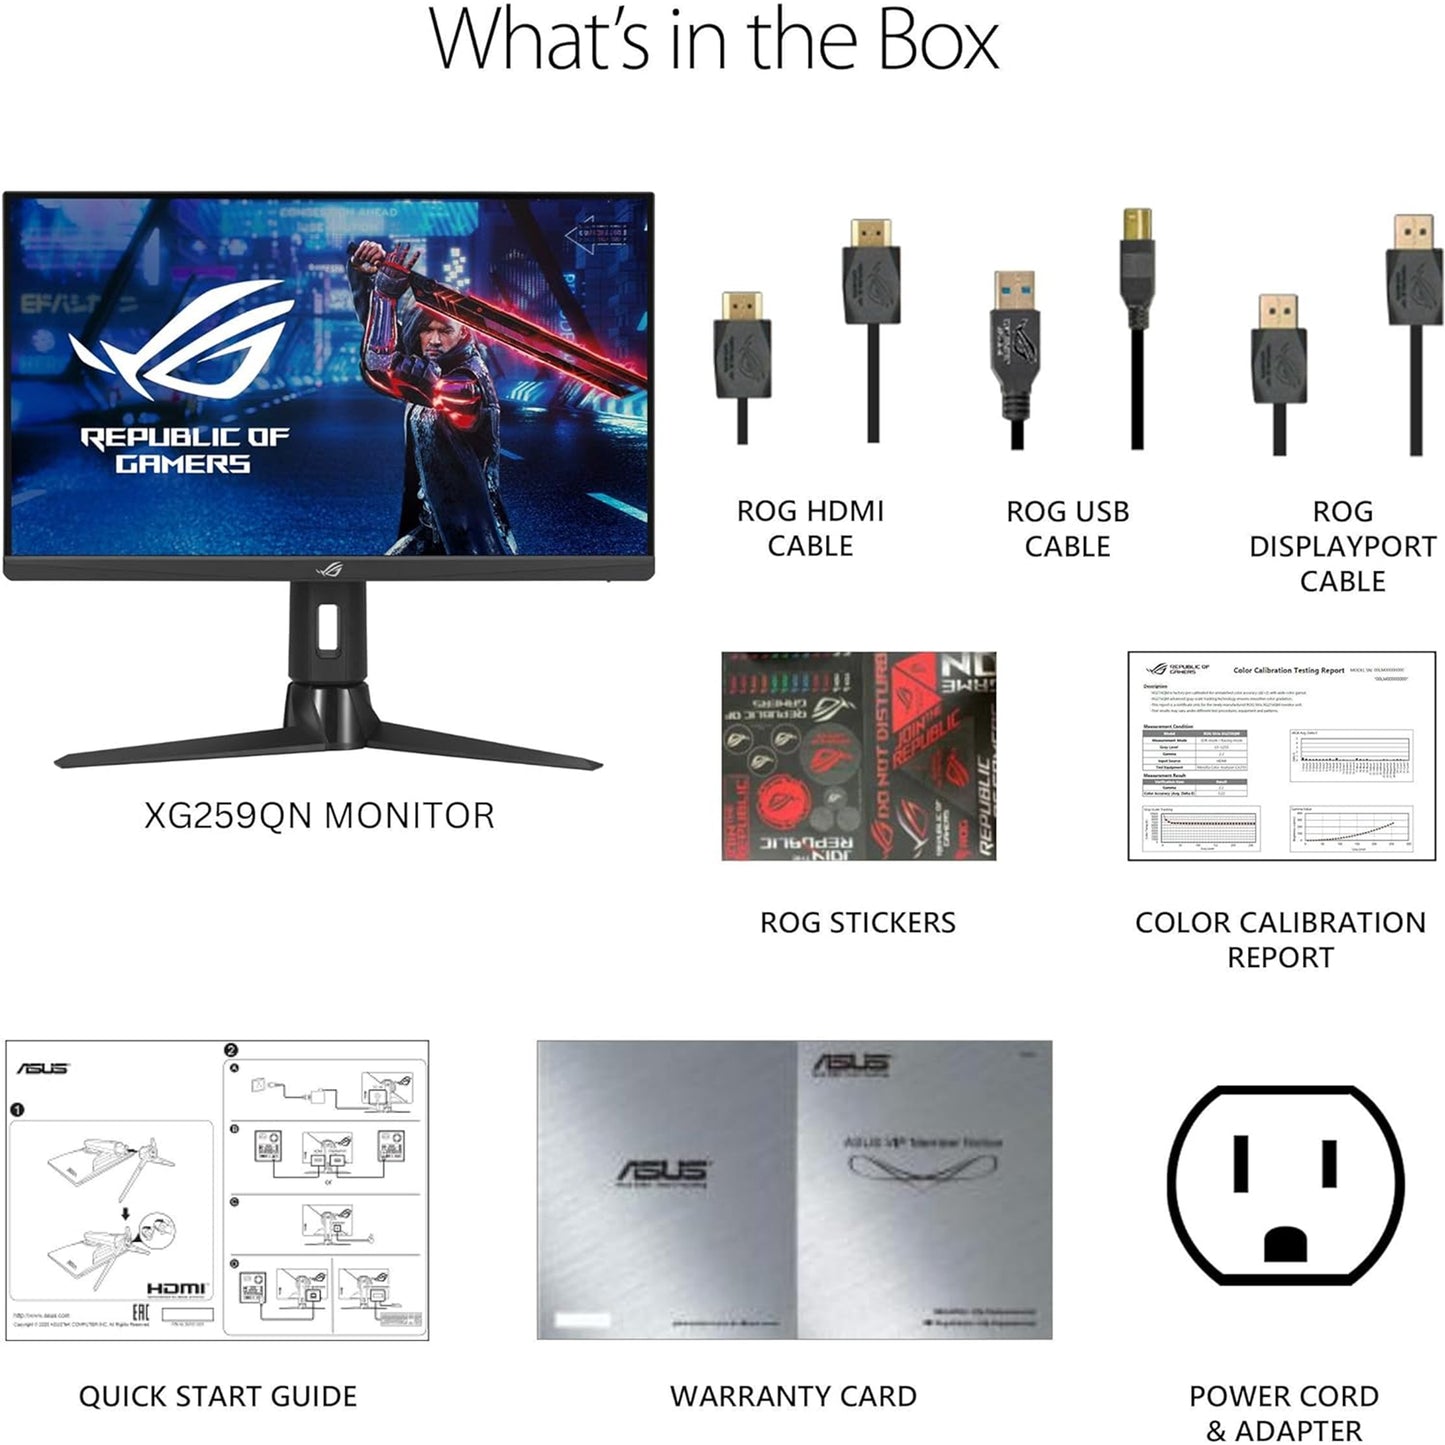 شاشة الألعاب ASUS ROG Strix مقاس 25 بوصة (24.5 بوصة قابلة للعرض) بدقة 1080 بكسل HDR (XG259QN) - 0.3 مللي ثانية، Fast IPS، FreeSync Premium، ELMB Sync، DisplayPort، HDMI، USB Hub، DisplayHDR 400